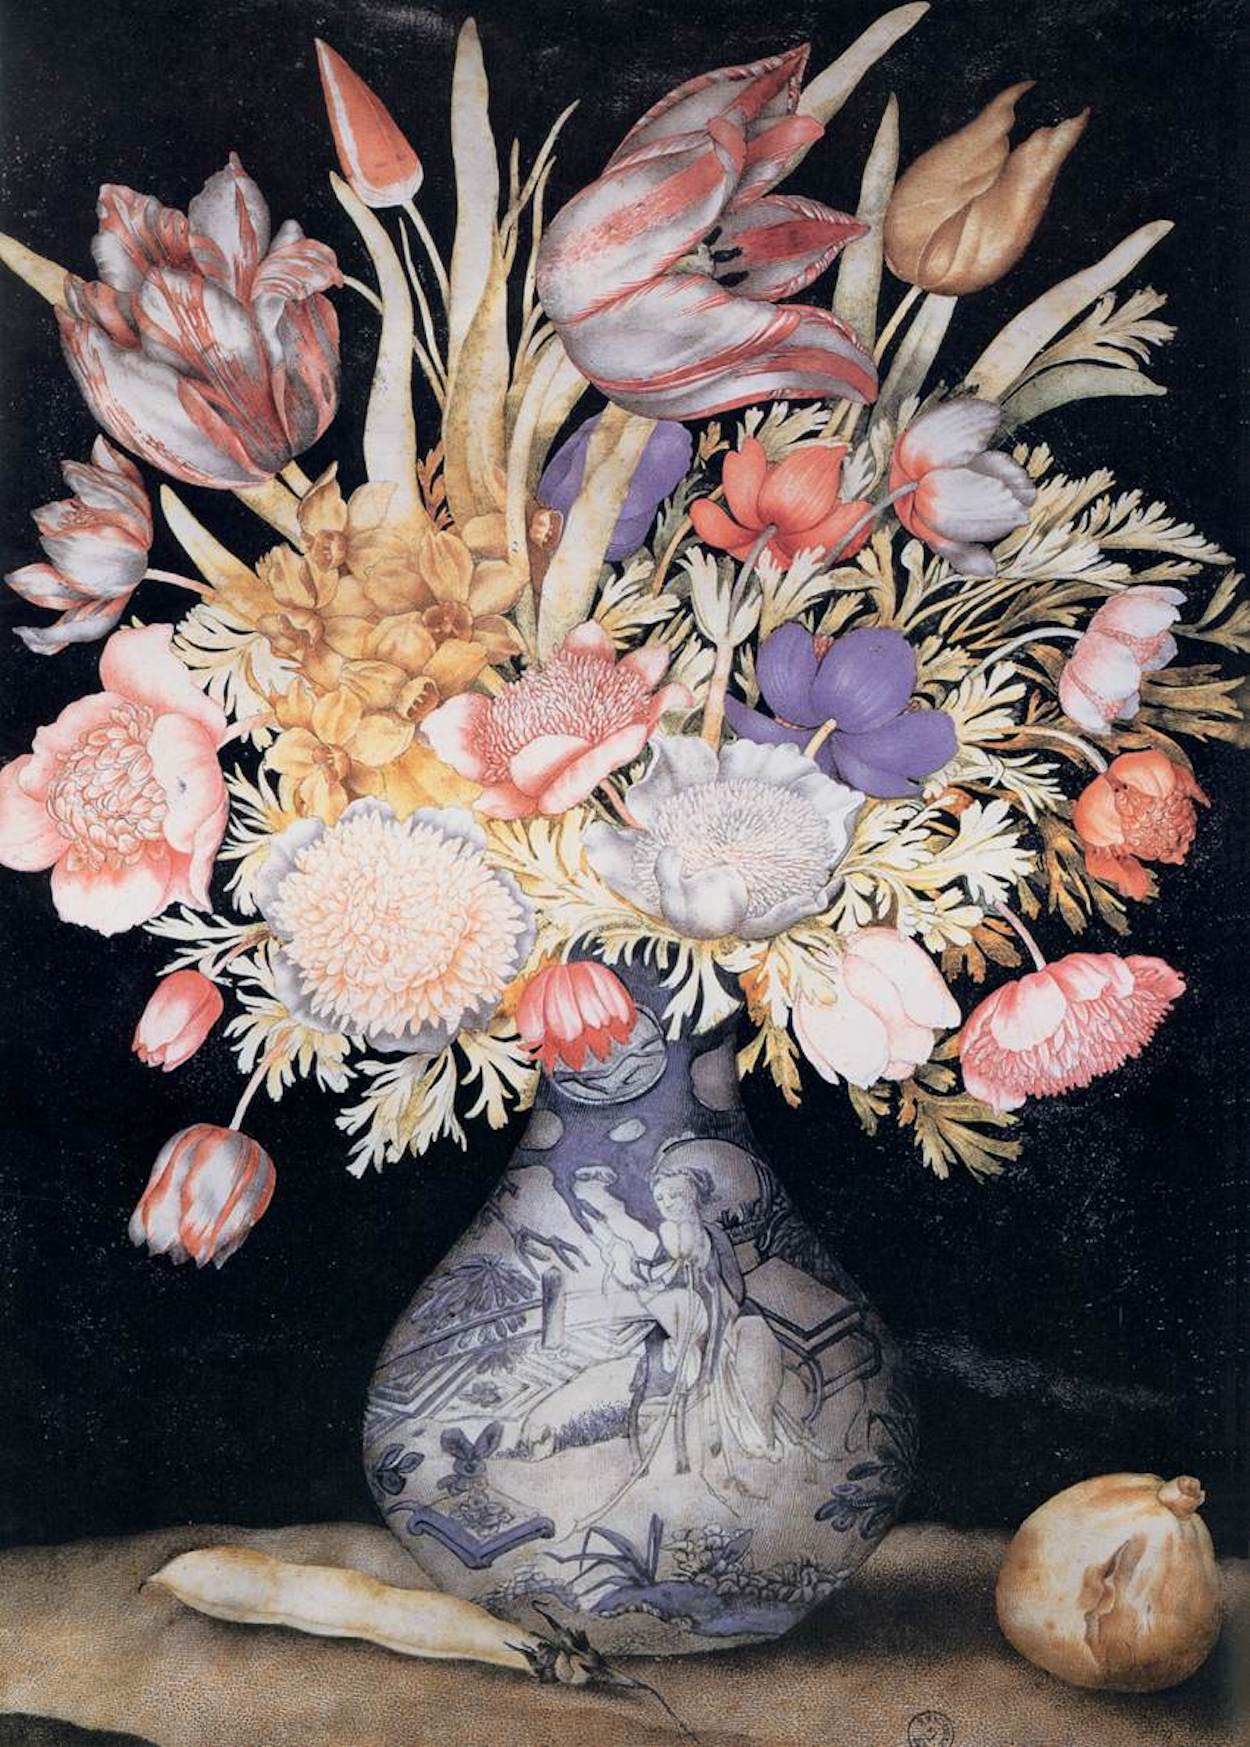 中國花瓶與花果 by Giovanna Garzoni - 約 1641 年至 1652 年 - 51 x 36.9 釐米 